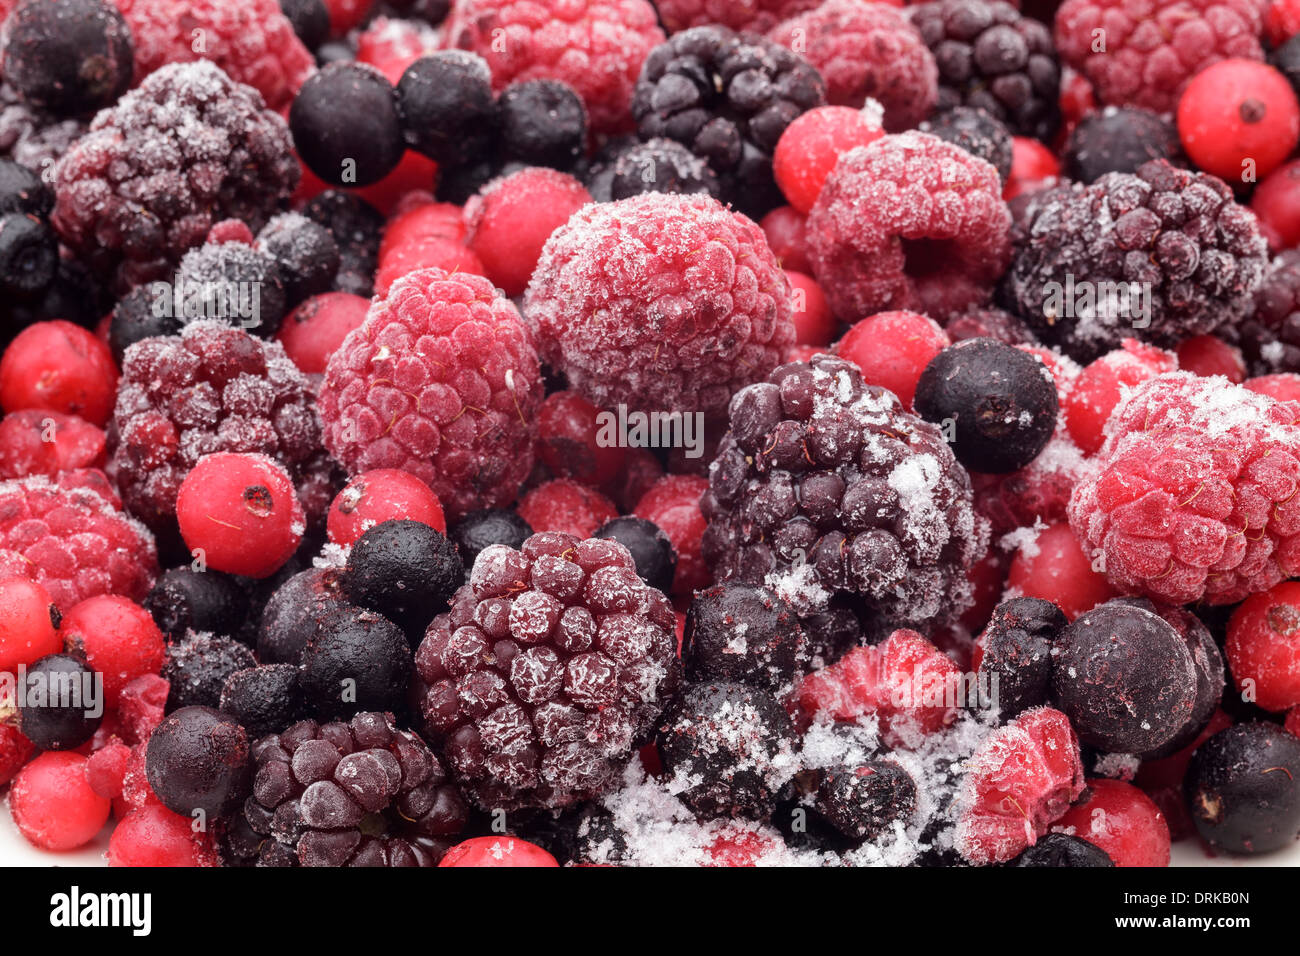 Frozen berries Stock Photo